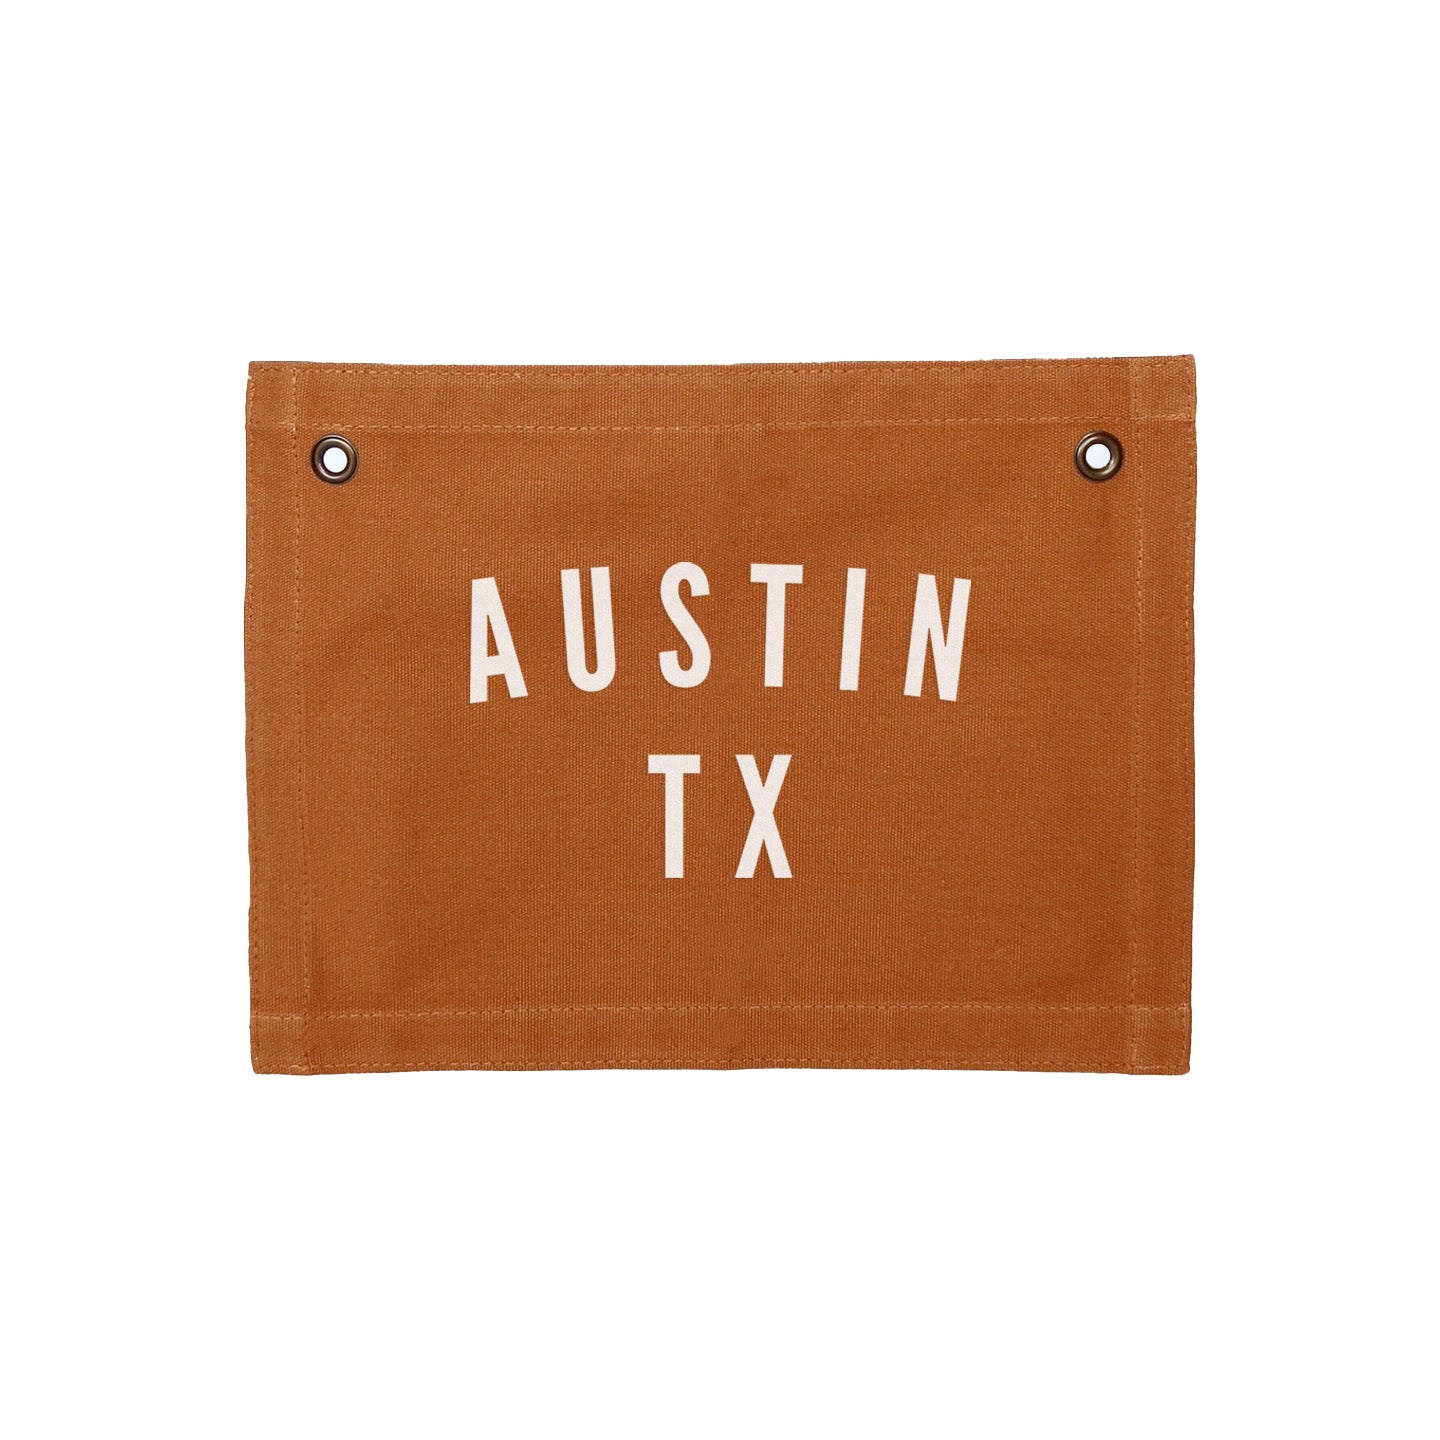 Austin Texas Small Canvas Flag